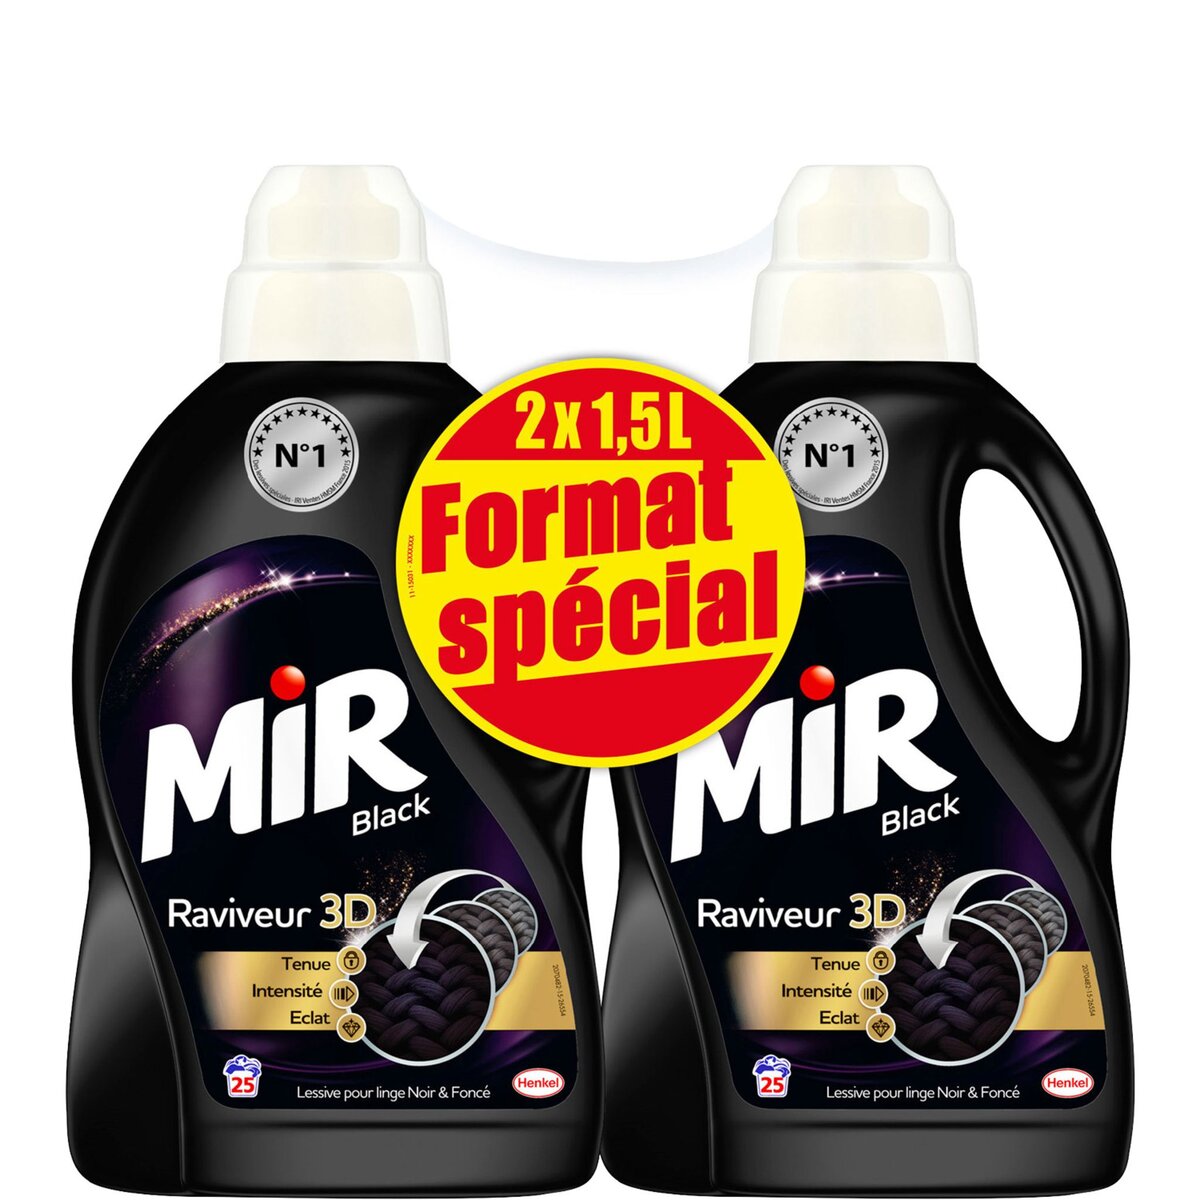 MIR Mir Black lessive spéciale concentrée 50 lavages -2x1,5l